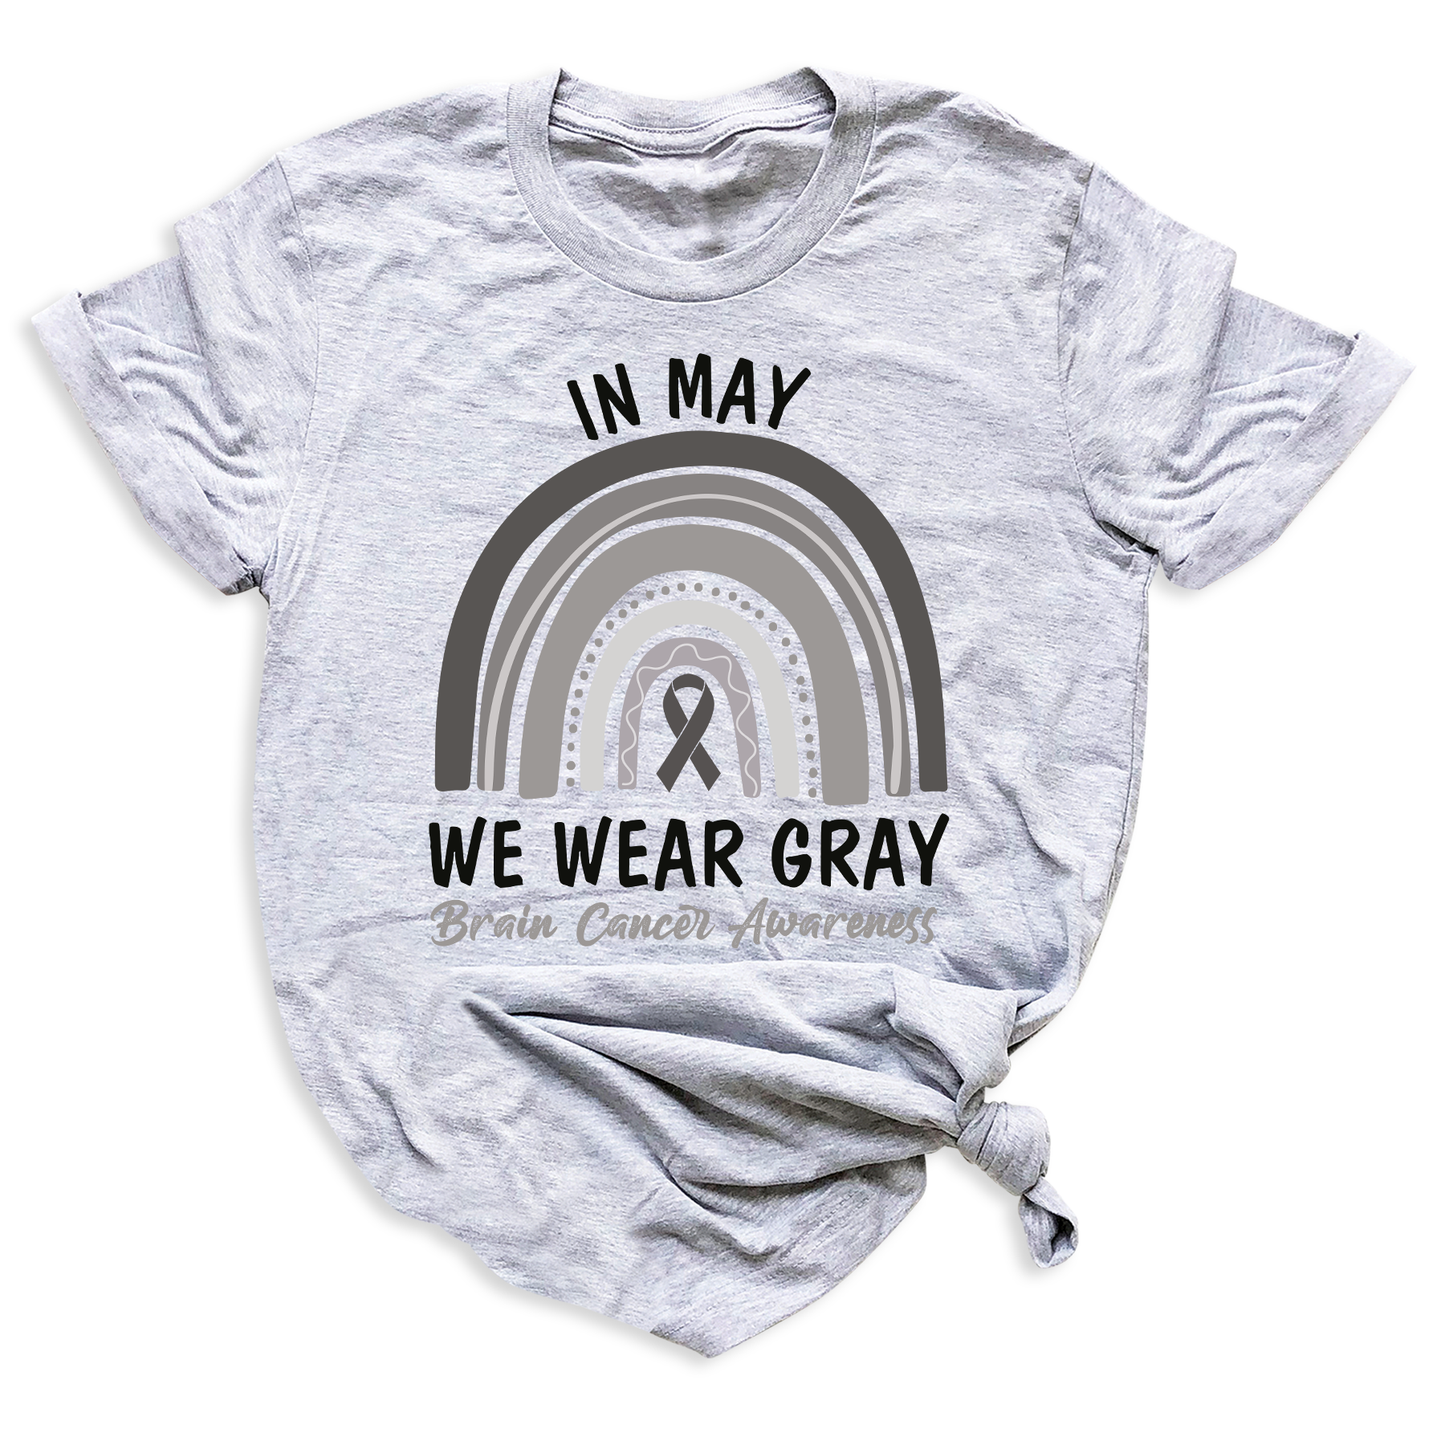 Brain Cancer Awareness Shirts